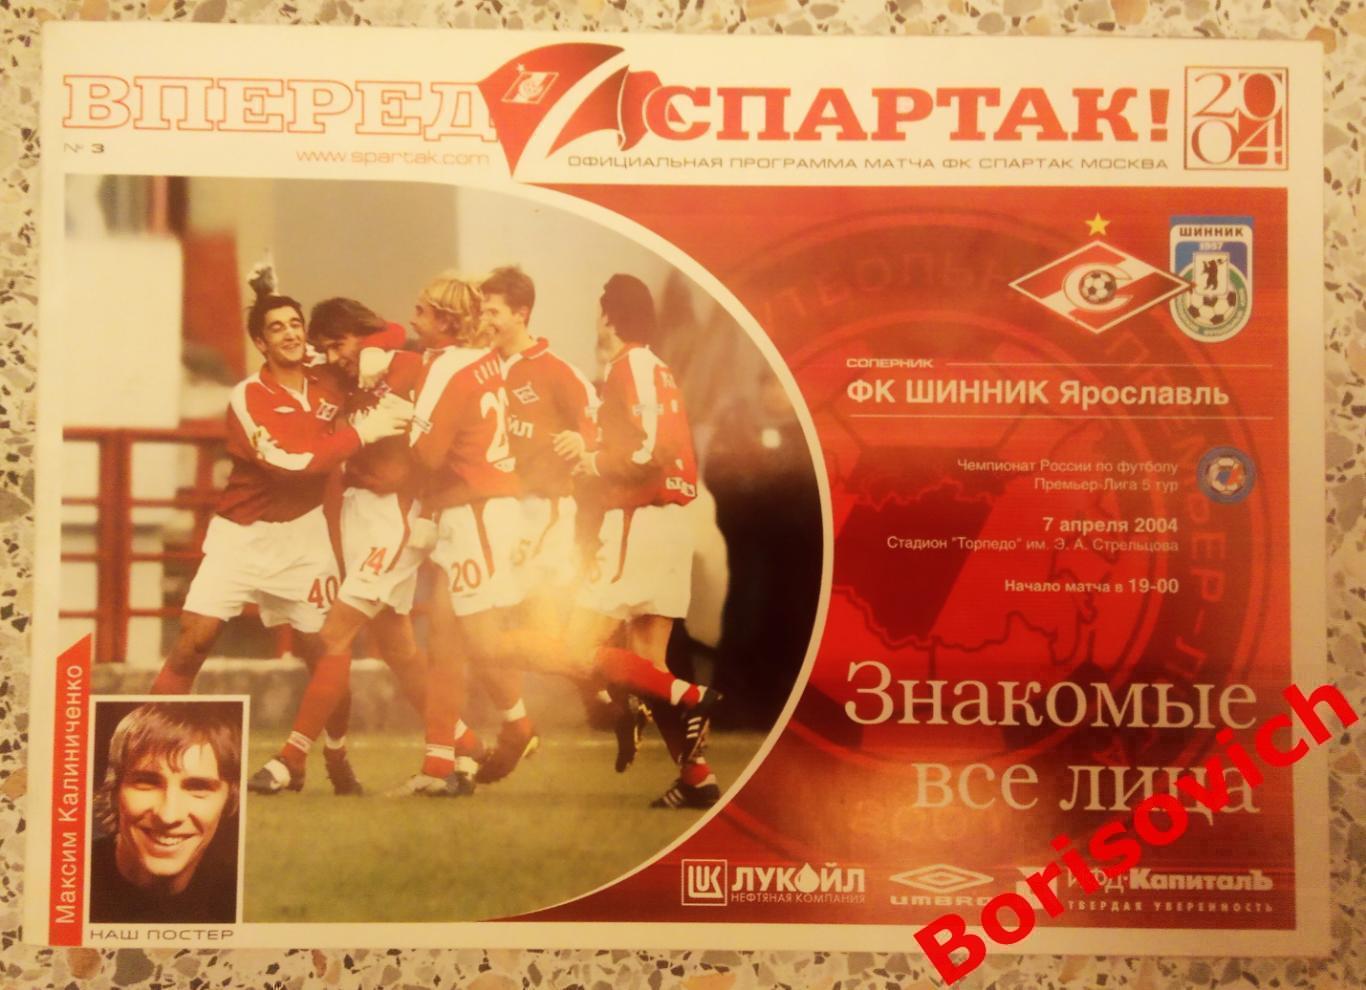 Спартак Москва - Шинник Ярославль 07-04-2004